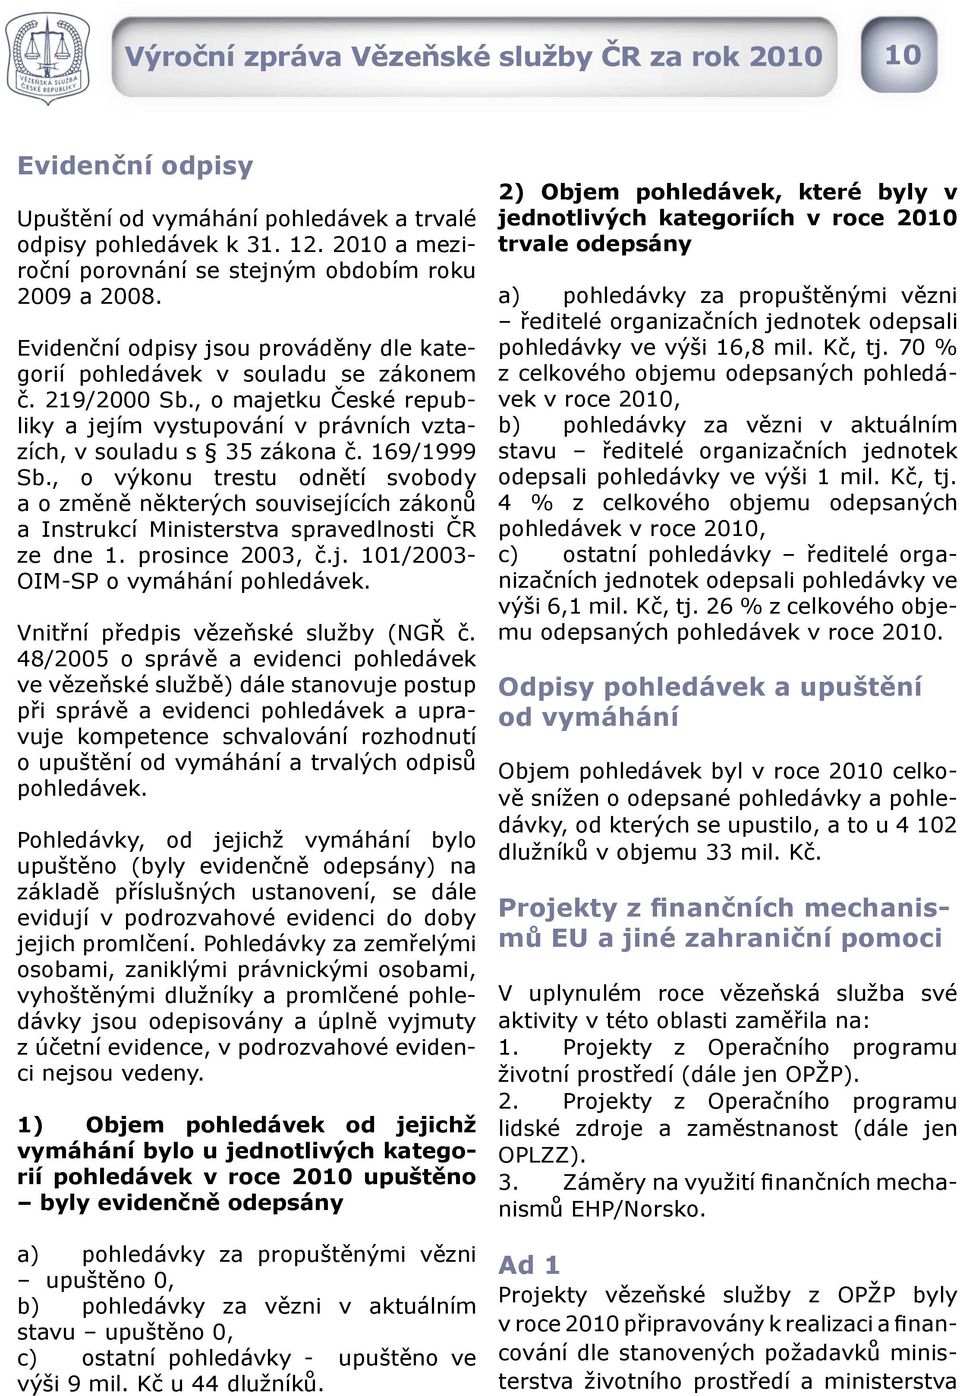 , o výkonu trestu odnětí svobody a o změně některých souvisejících zákonů a Instrukcí Ministerstva spravedlnosti ČR ze dne 1. prosince 2003, č.j. 101/2003- OIM-SP o vymáhání pohledávek.